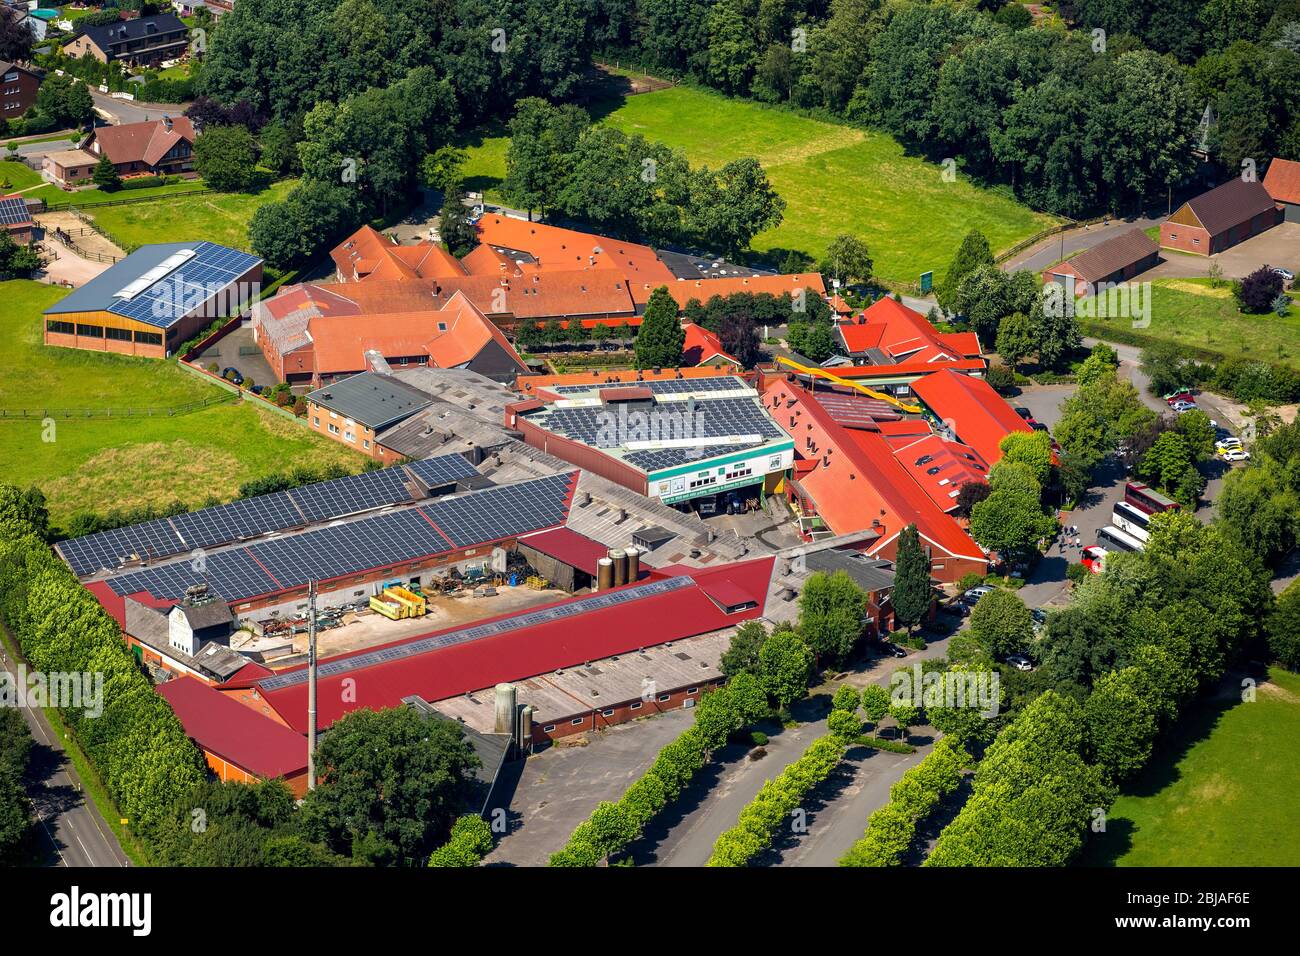 Bauernhof Prickingshof in Haltern, 02.07.2016, Luftaufnahme, Deutschland,  Nordrhein-Westfalen, Haltern am See Stockfotografie - Alamy